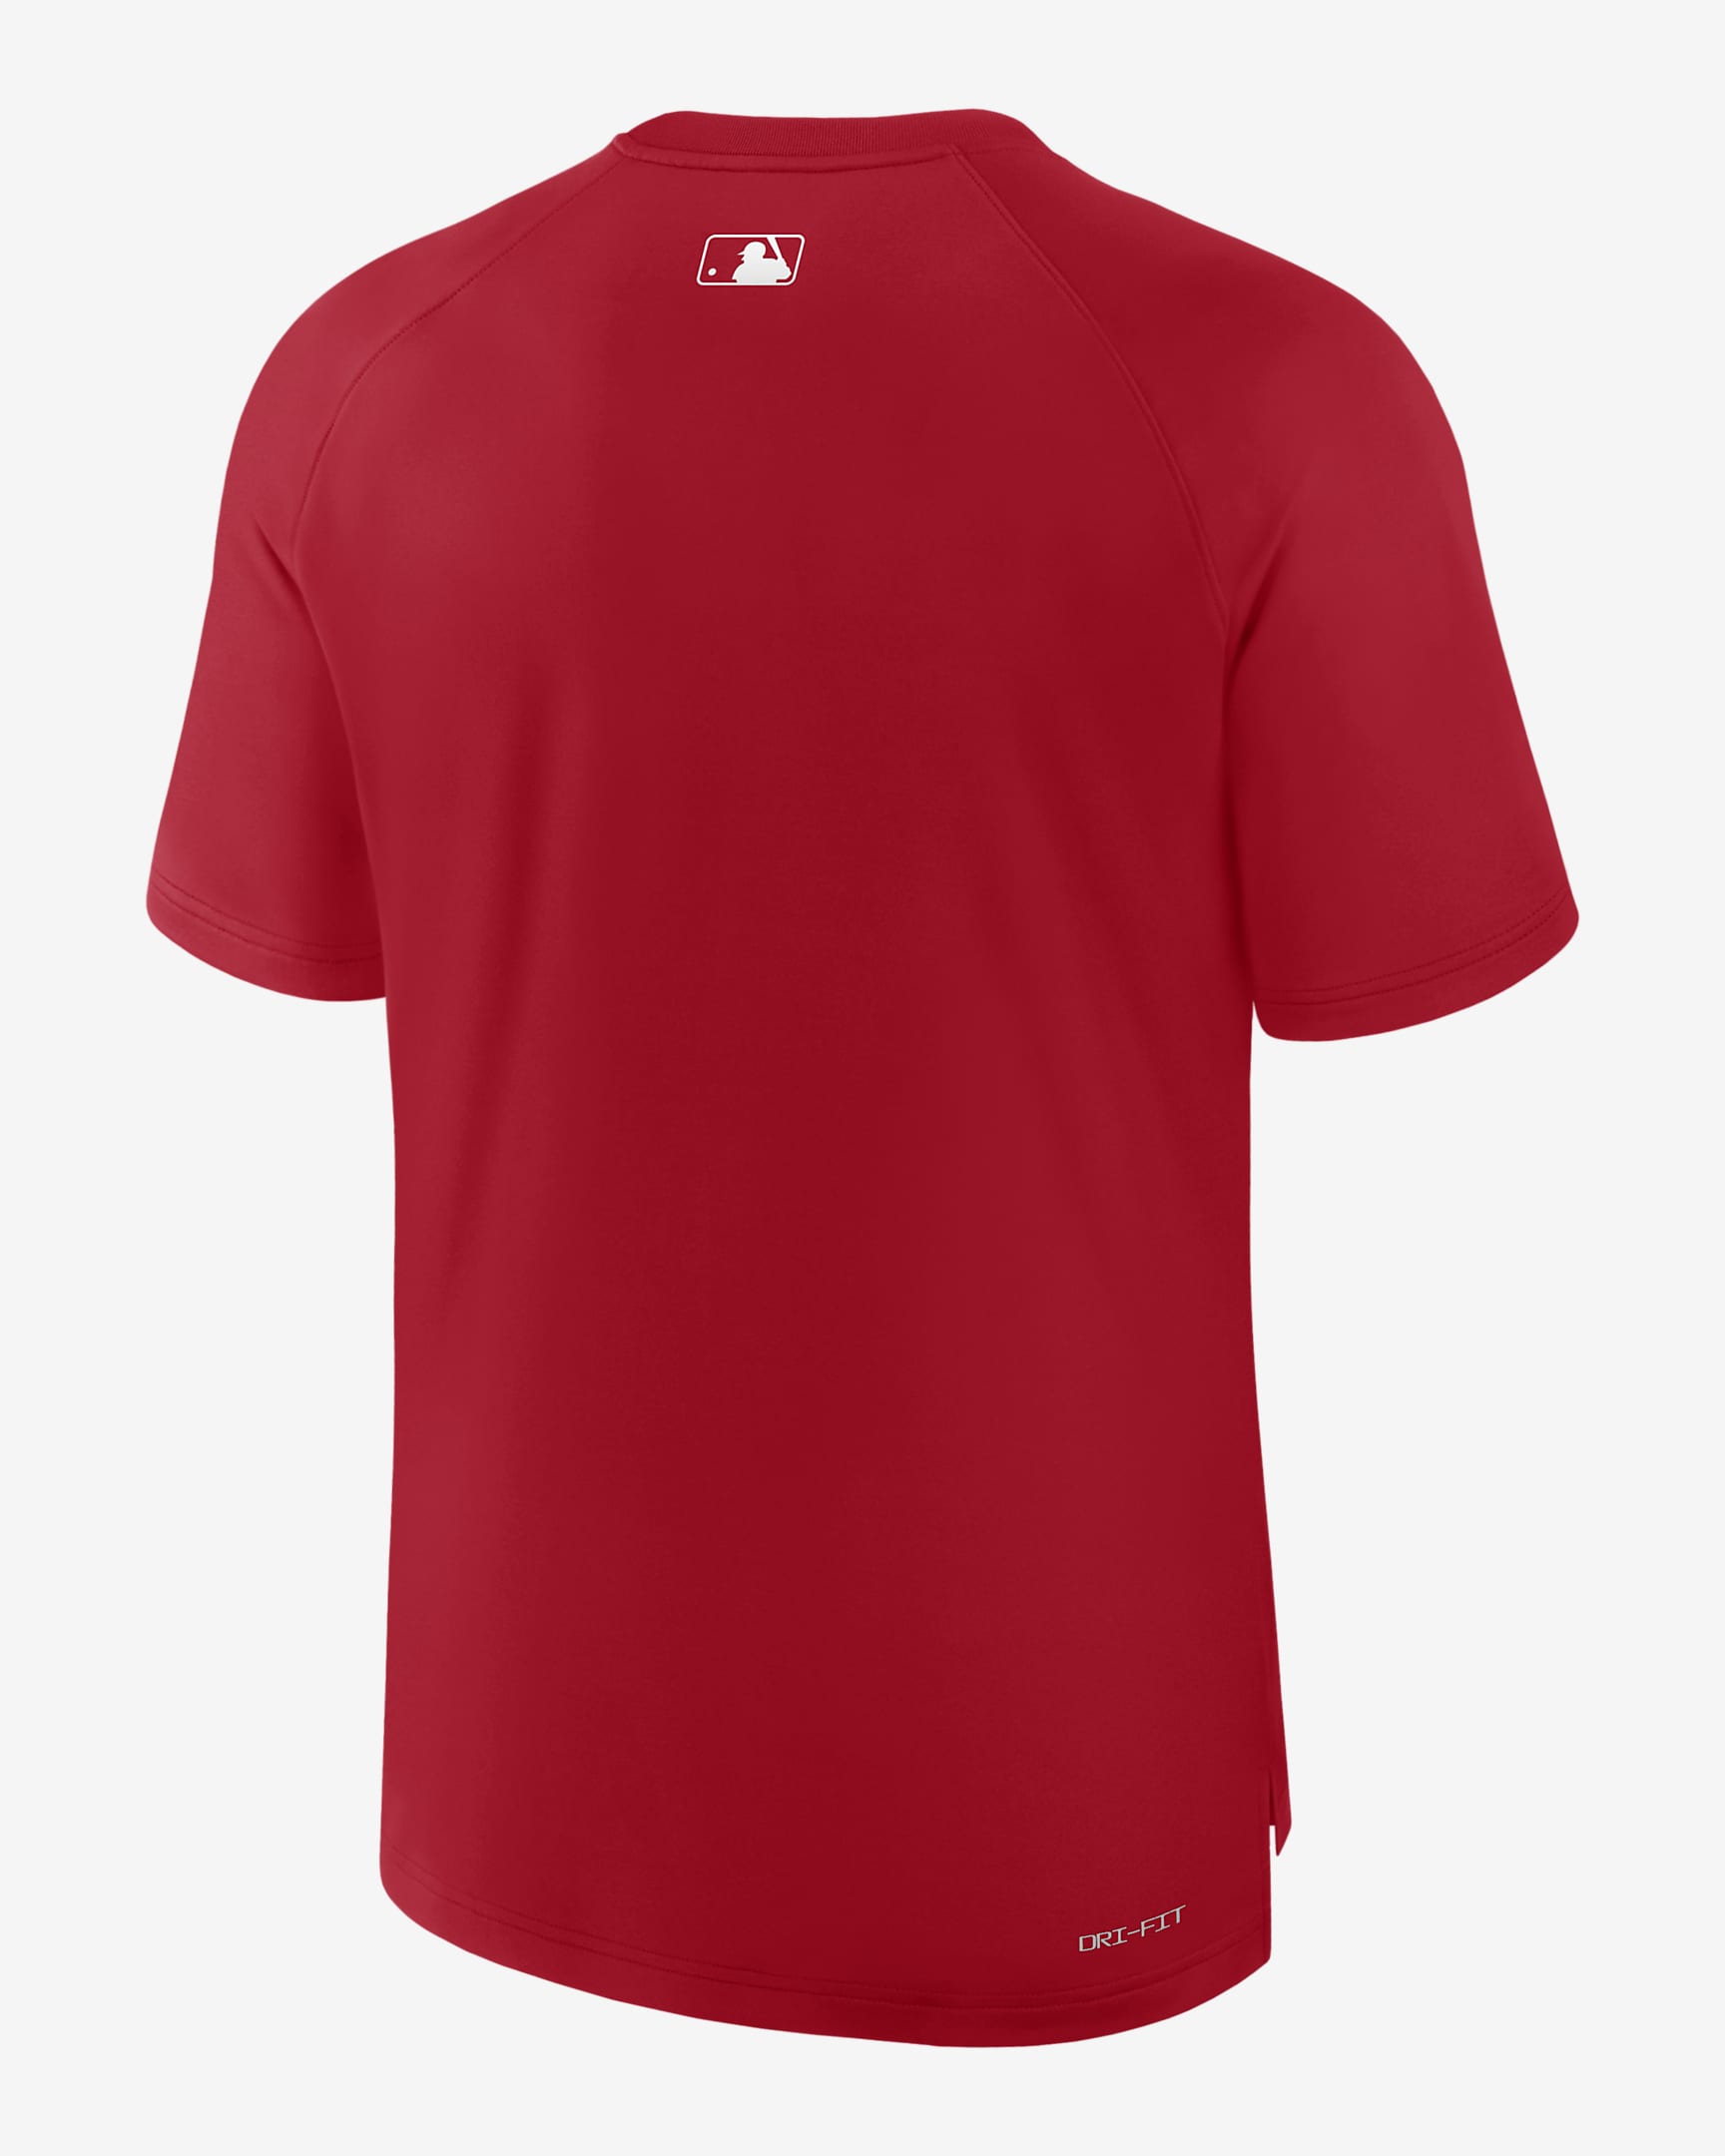 St. Louis Cardinals Authentic Collection Pregame Men's Nike Dri-FIT MLB ...